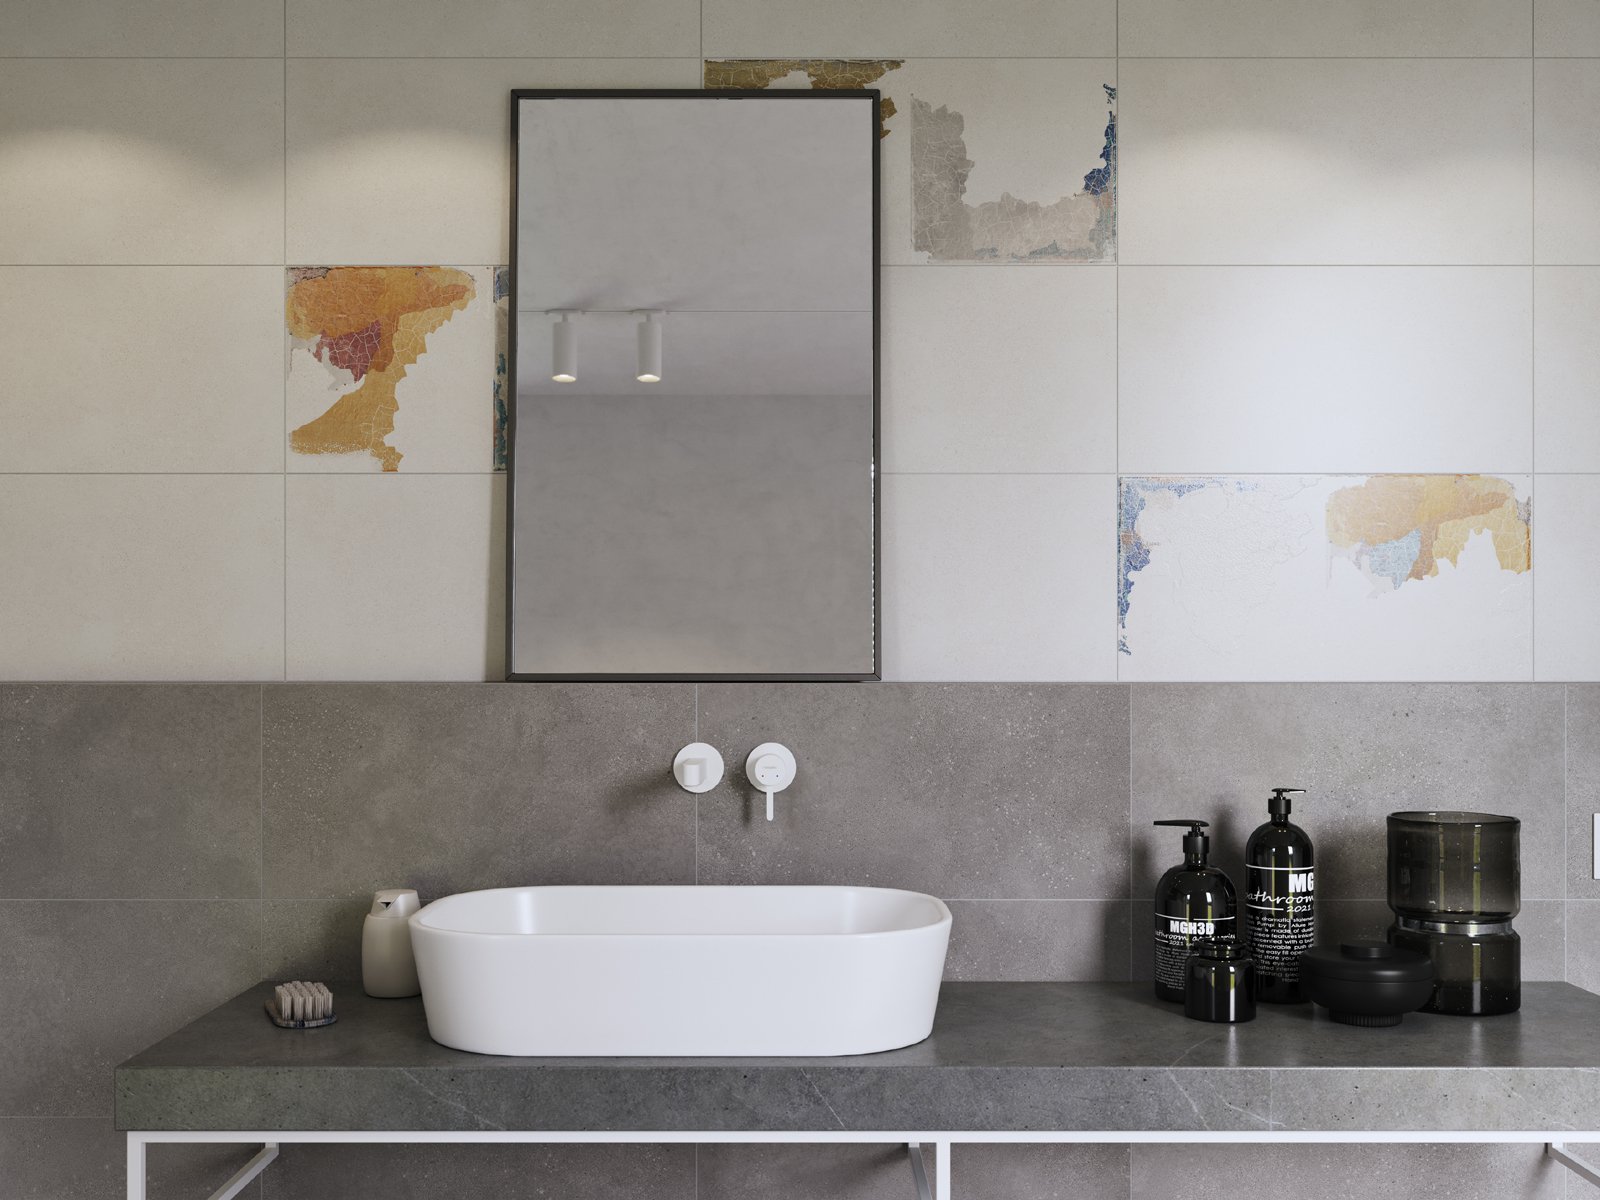 #Koupelna #beton #Rustikální styl #šedá #350 - 500 Kč/m2 #500 - 700 Kč/m2 #700 - 1000 Kč/m2 #RAKO #Betonico#Moderní styl#Extra velký formát#Velký formát